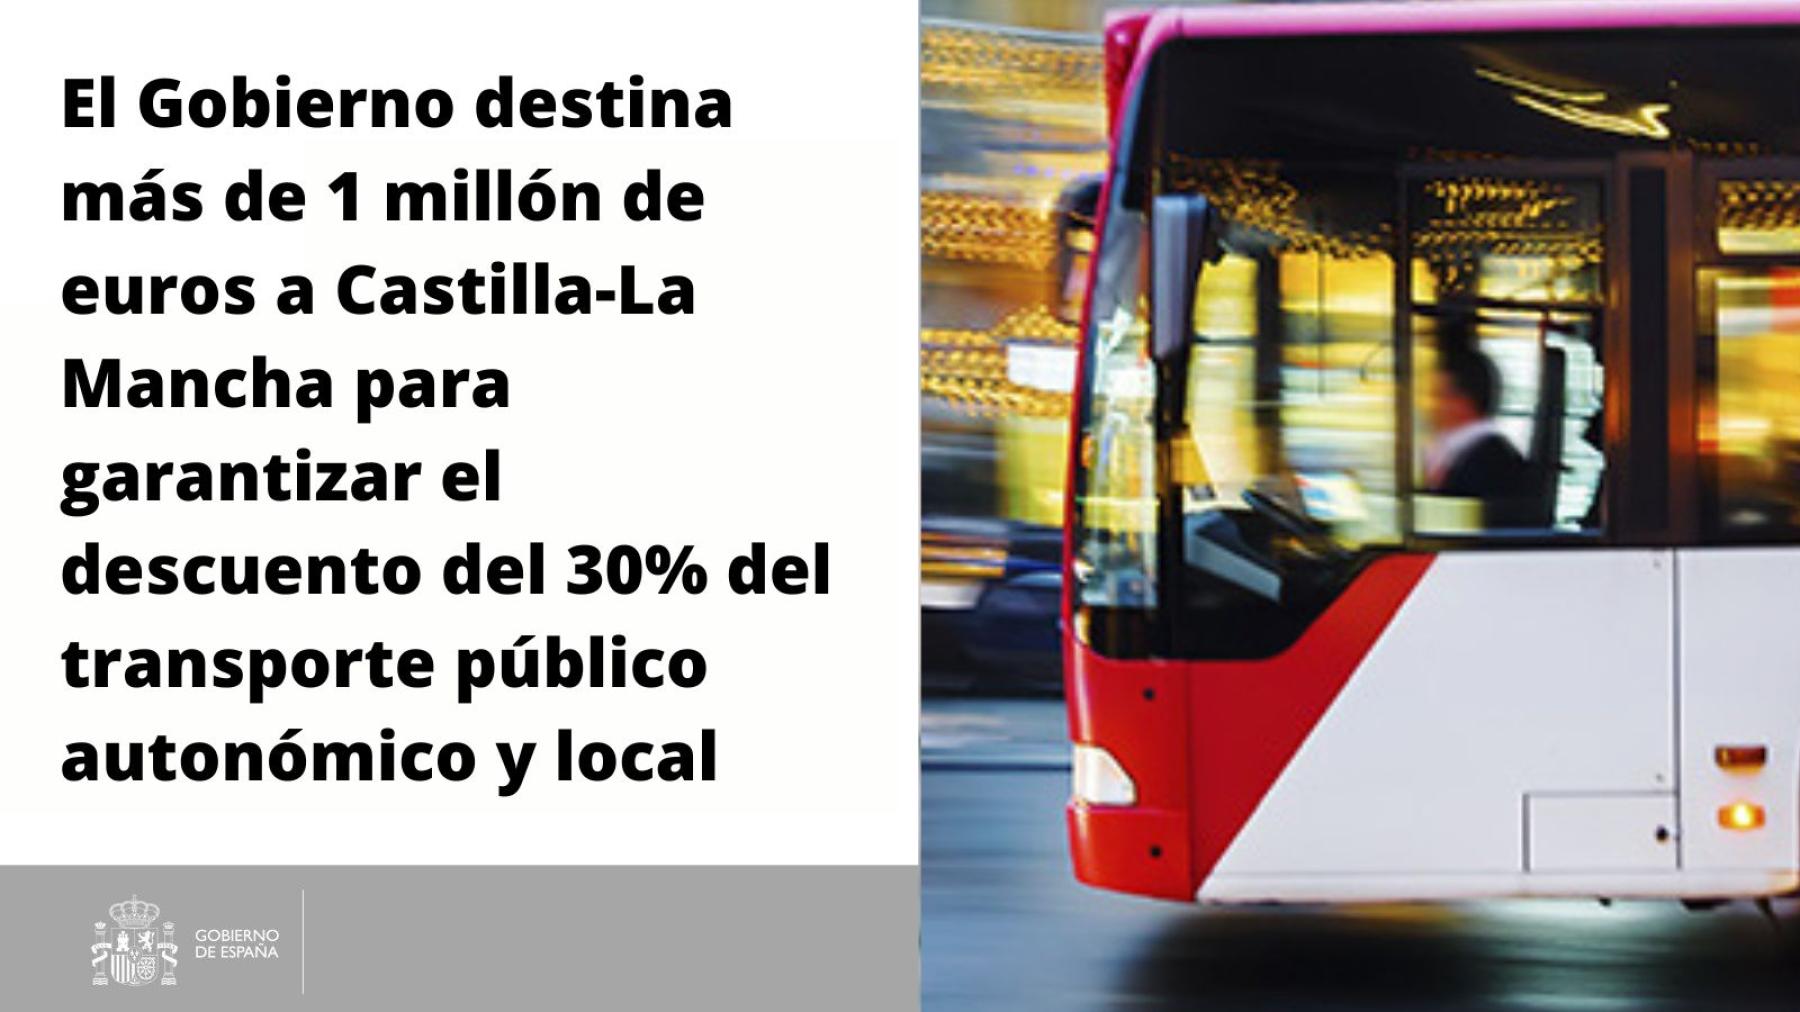 El Gobierno destina más de 1 millón de euros a Castilla-La Mancha para garantizar el descuento del 30% del transporte público autonómico y local